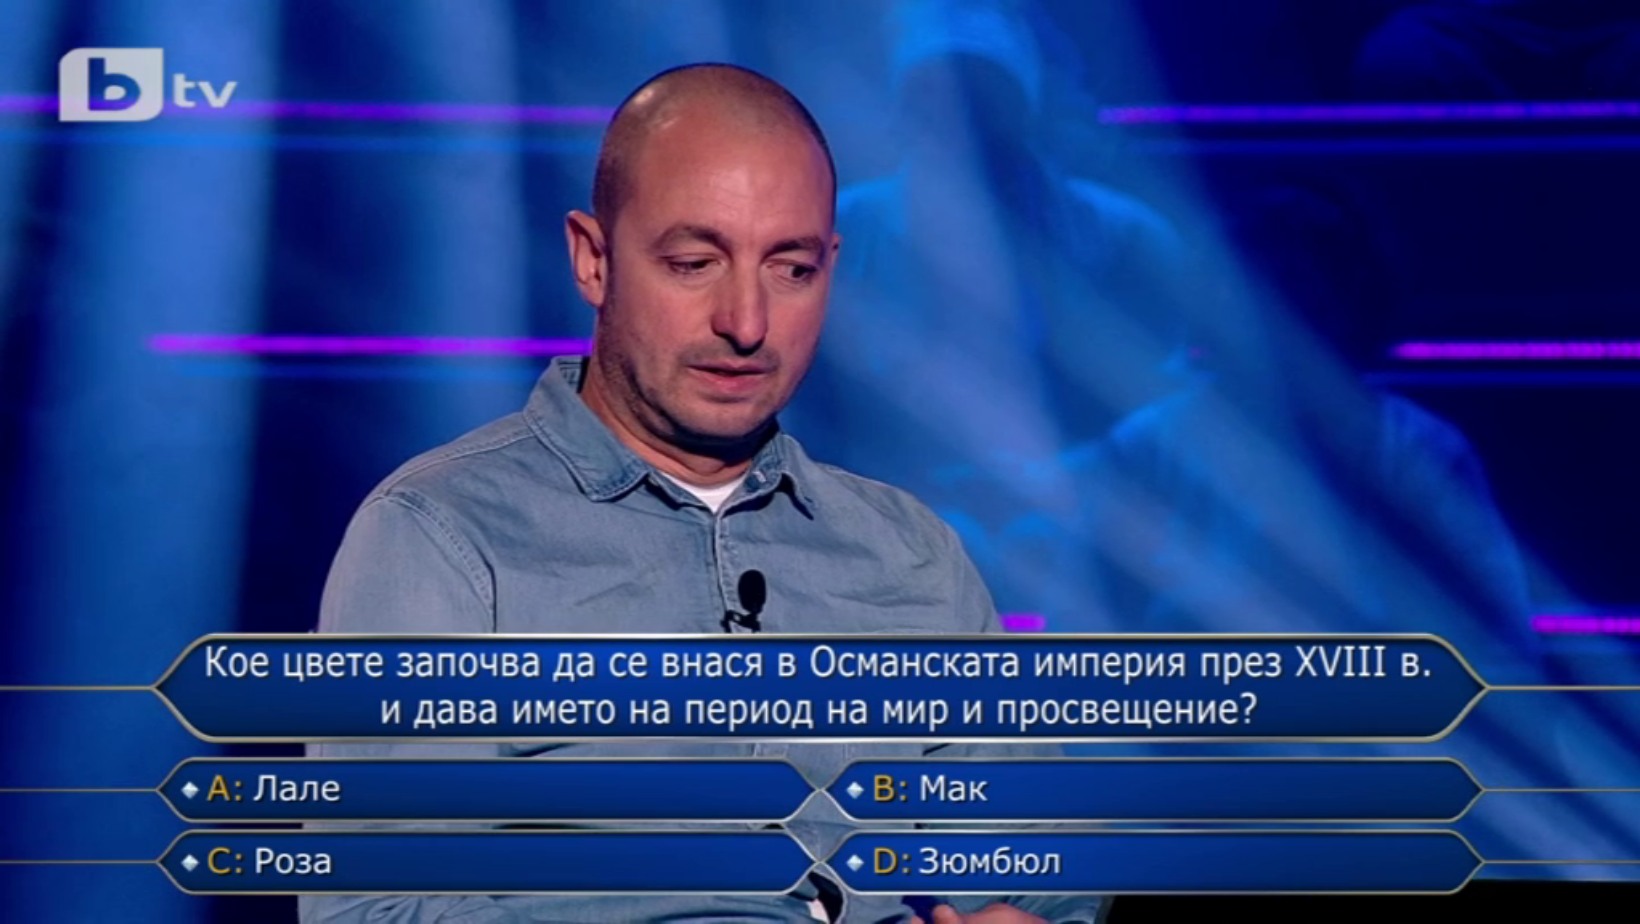 Добрата игра на Явор Йорданов продължи с по-сериозните въпроси в